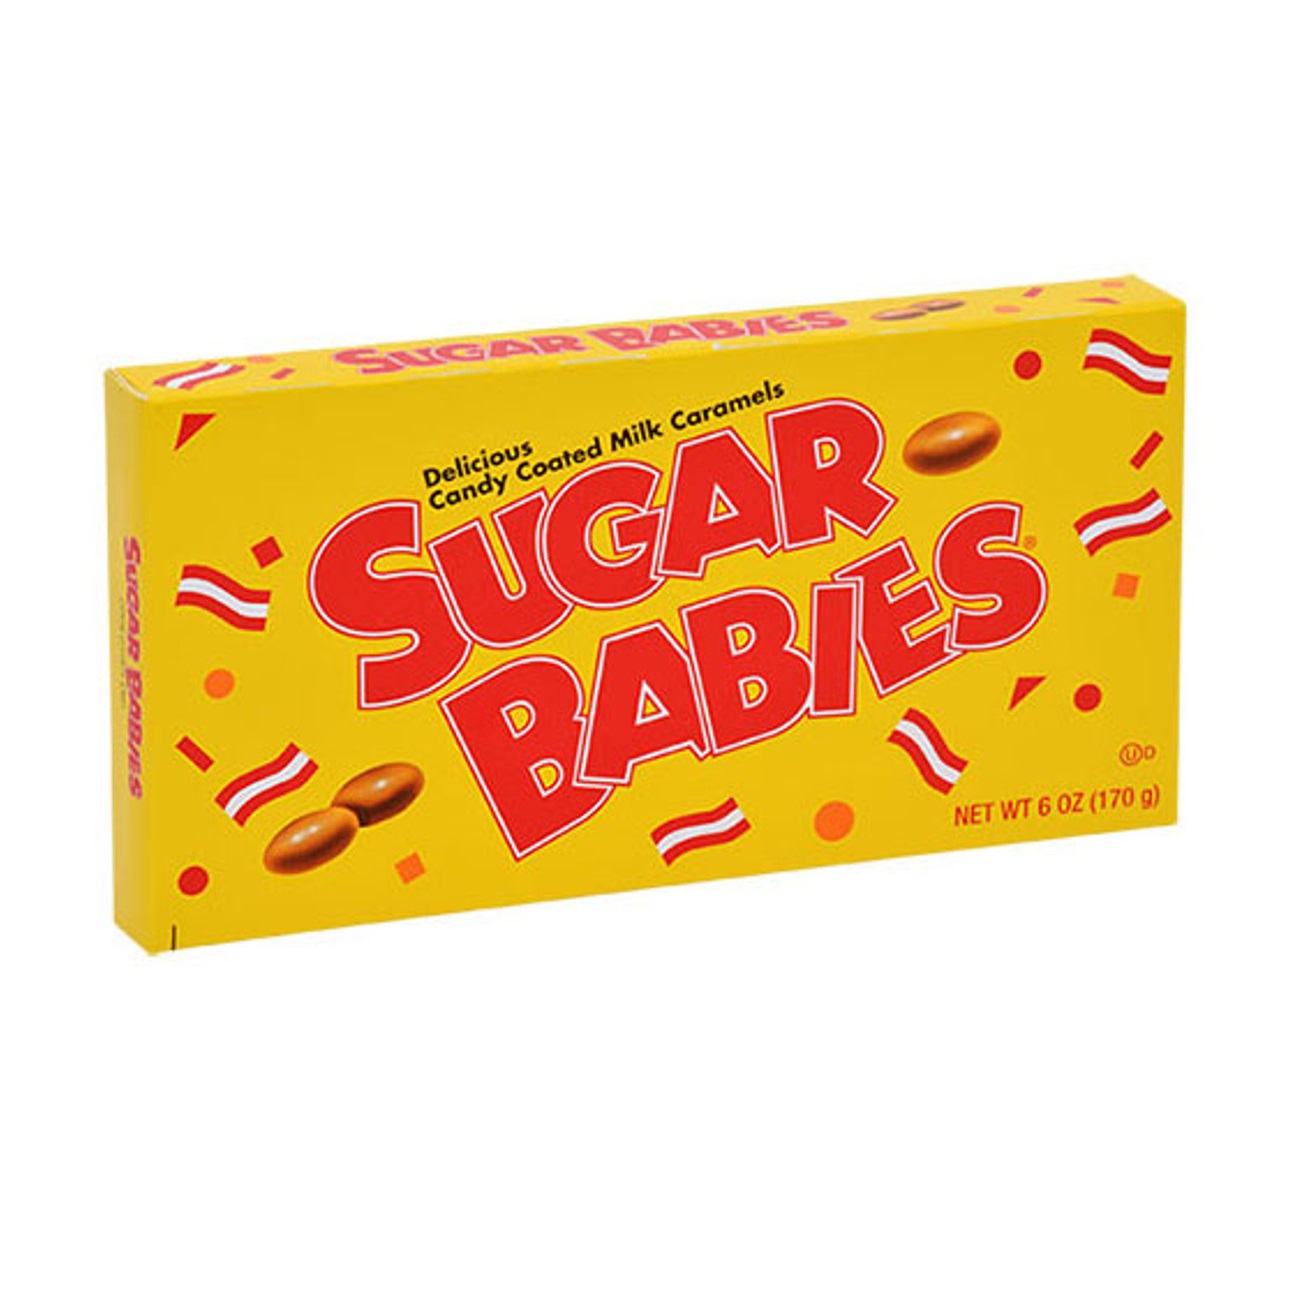 آبنیات جویدنی شوگر بیبیز Sugar Babies Candy وزن 170 گرم